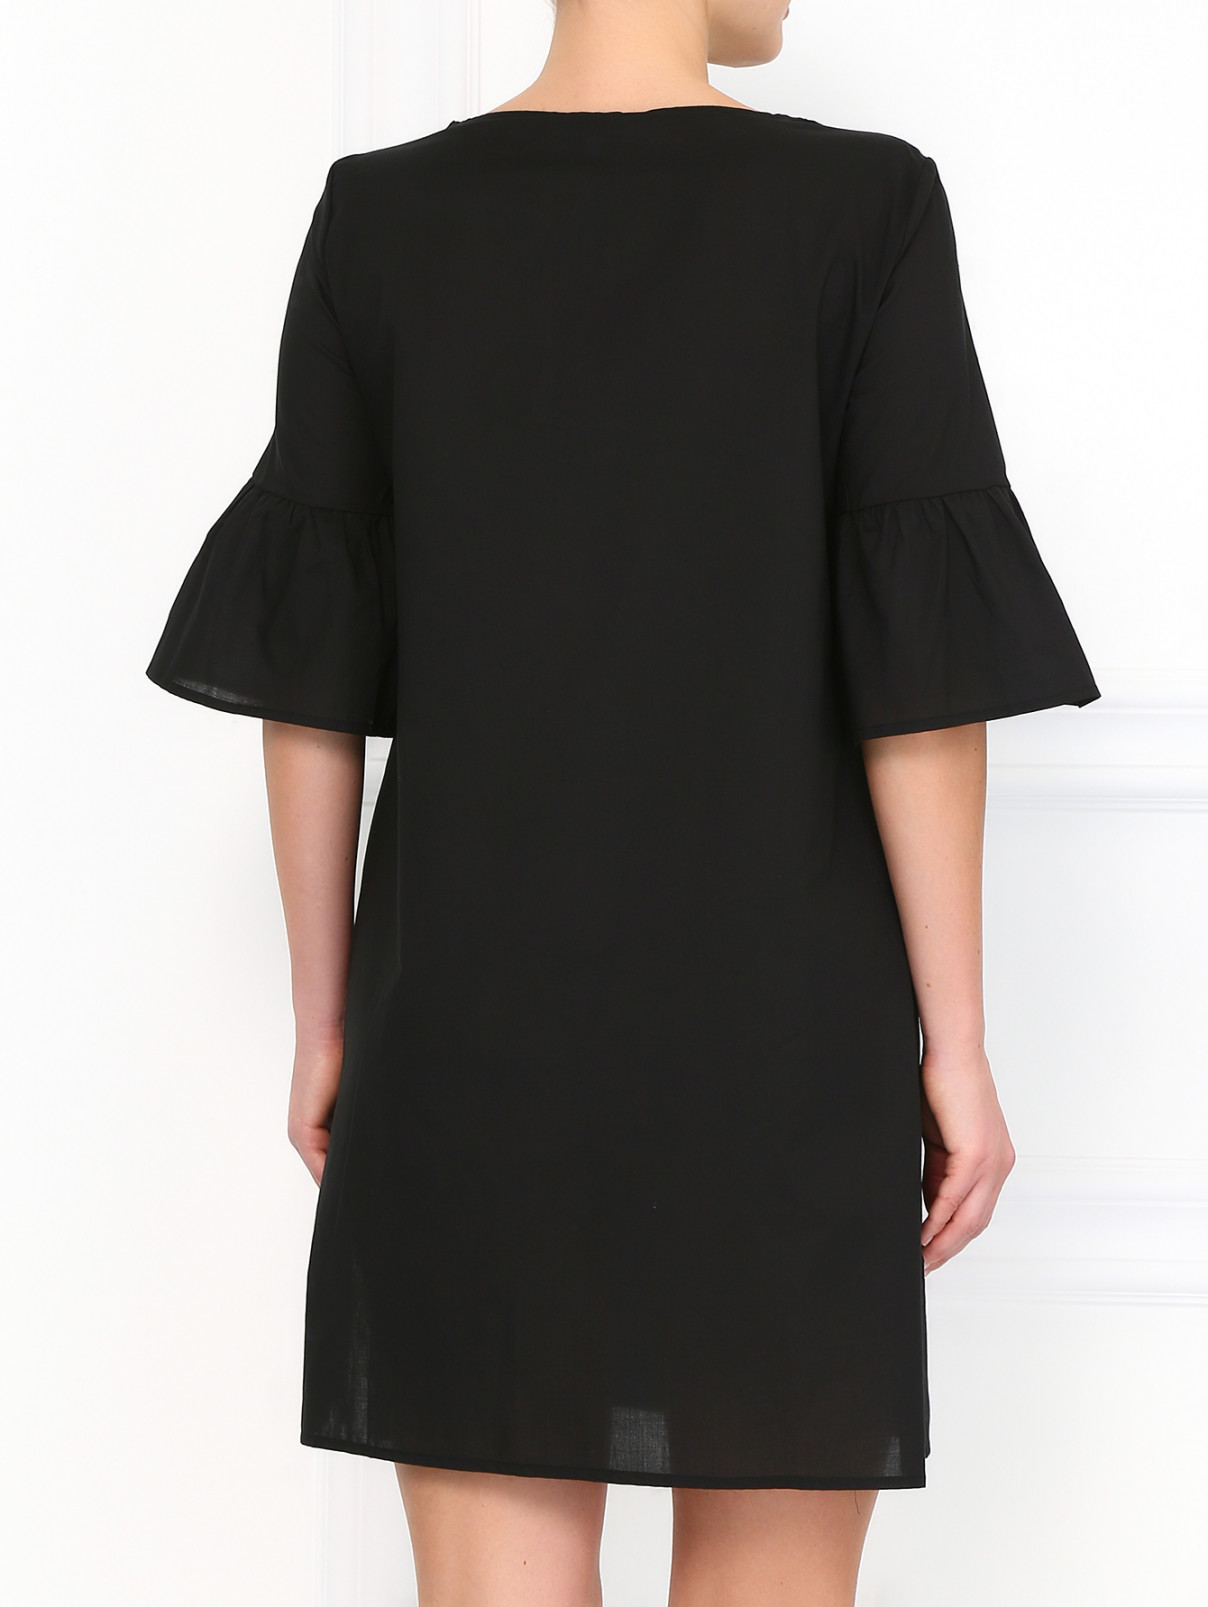 Платье из хлопка Vanda Catucci  –  Модель Верх-Низ1  – Цвет:  Черный